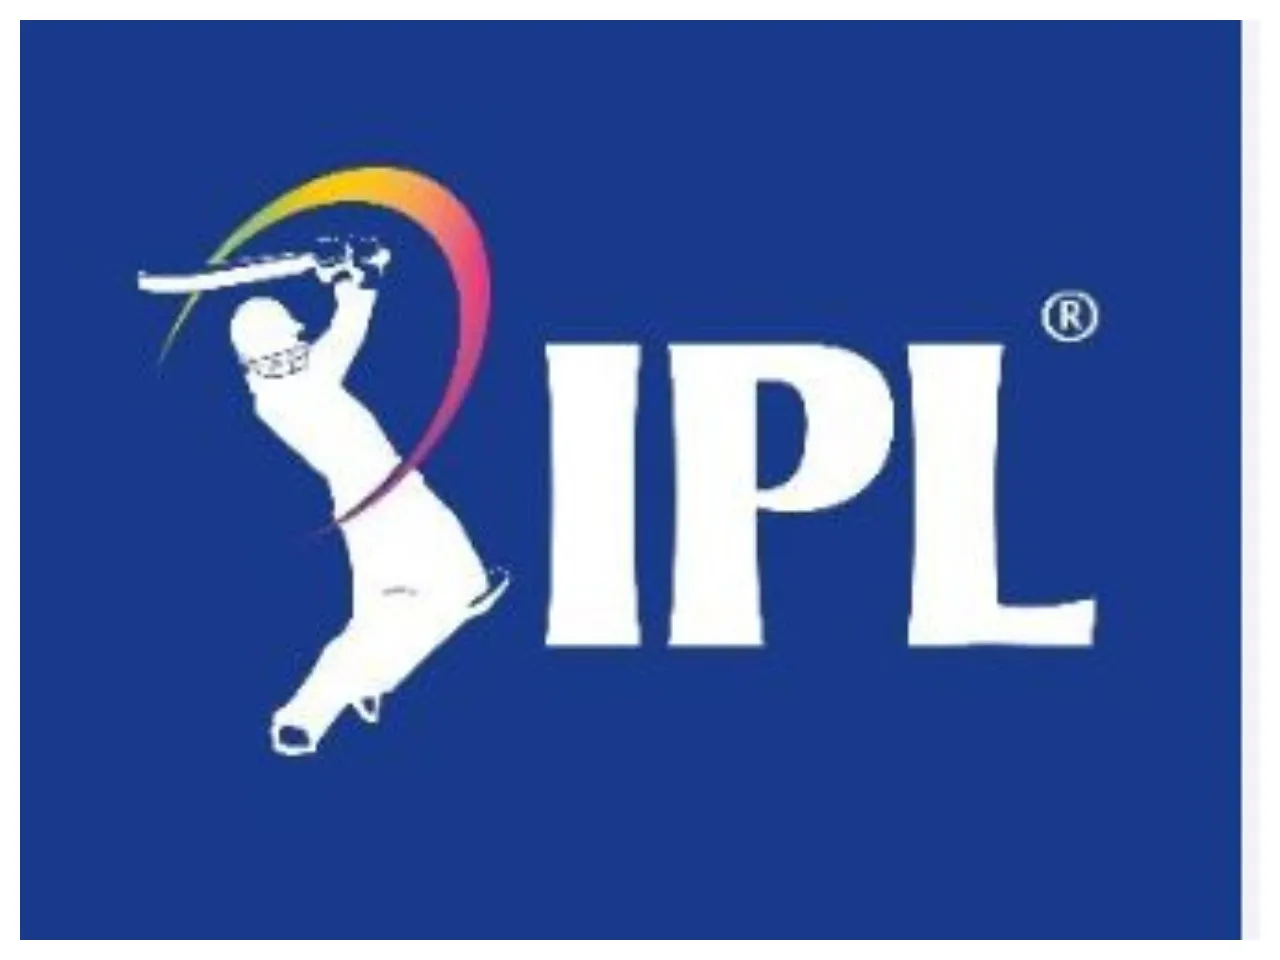 বড় খবর: ভেস্তে গেল IPL ফাইনাল!